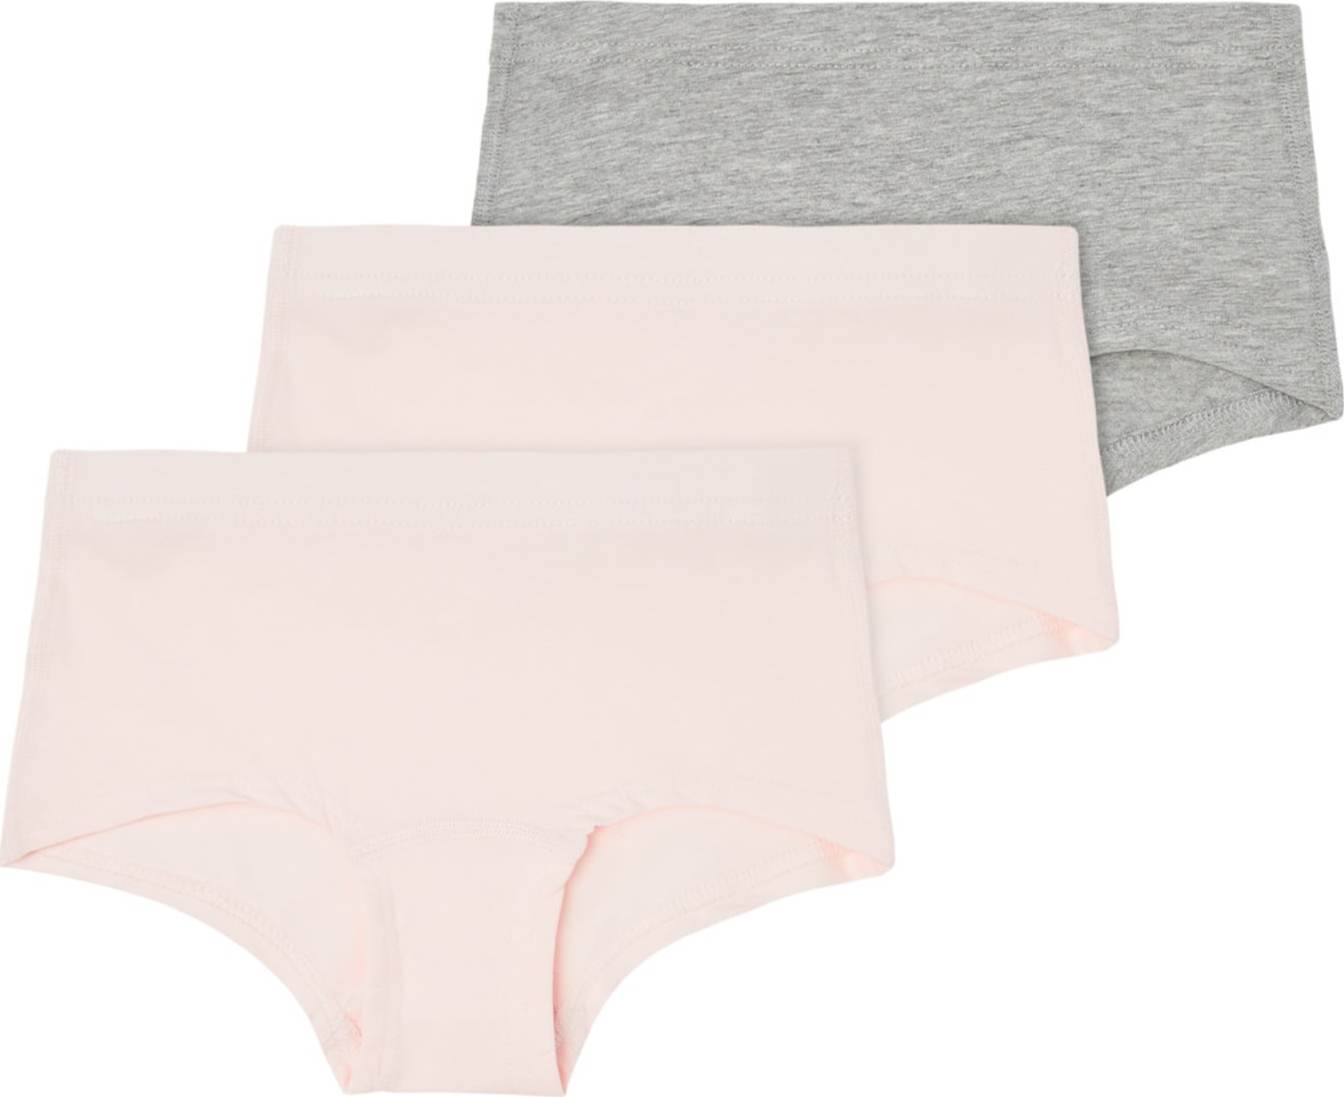 NAME IT Spodní prádlo šedý melír / růžová